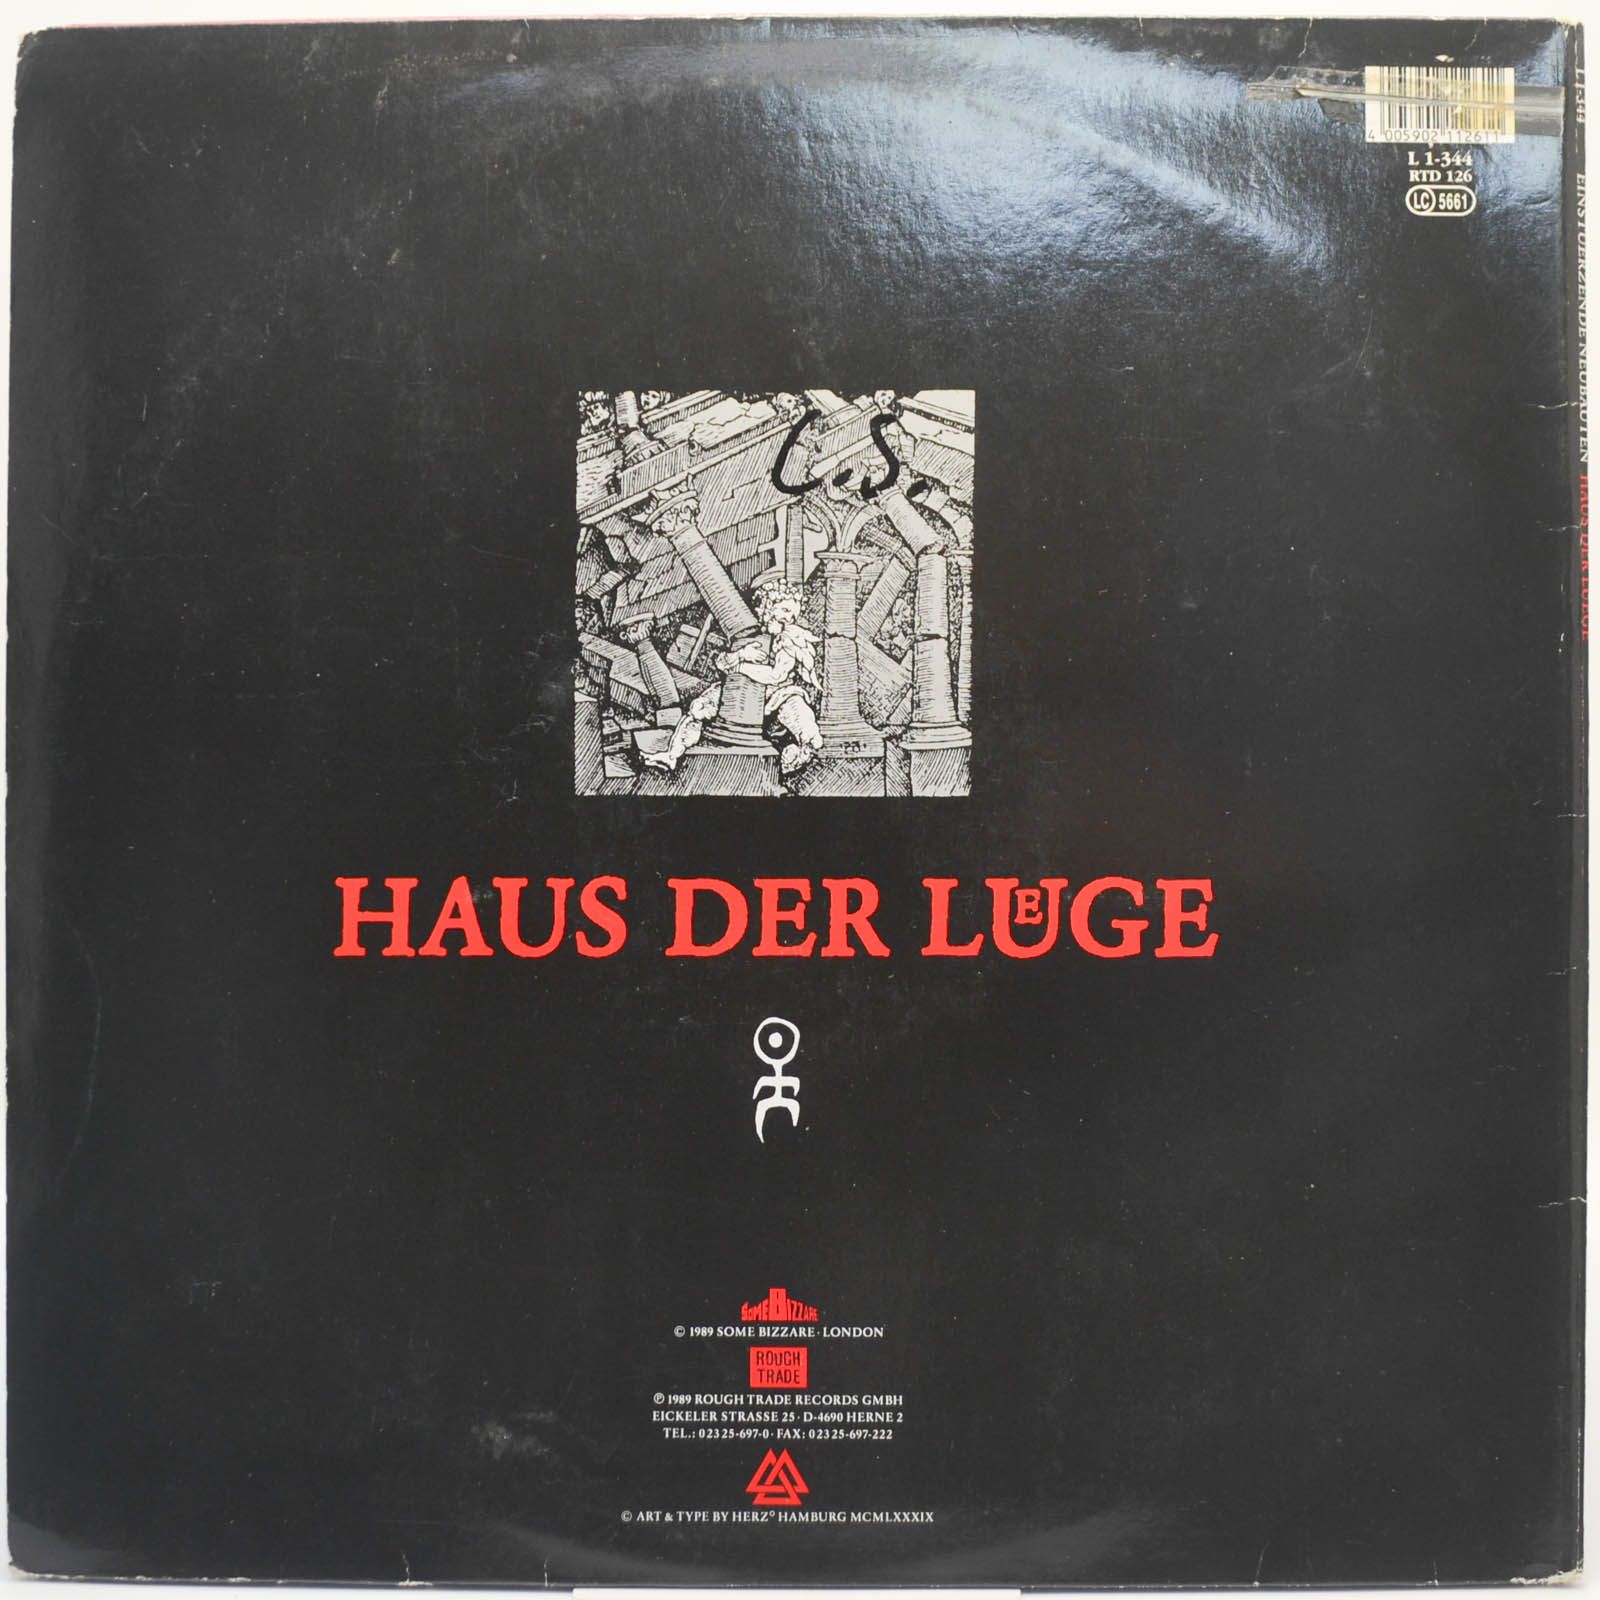 Einsturzende Neubauten — Haus Der Luege, 1989